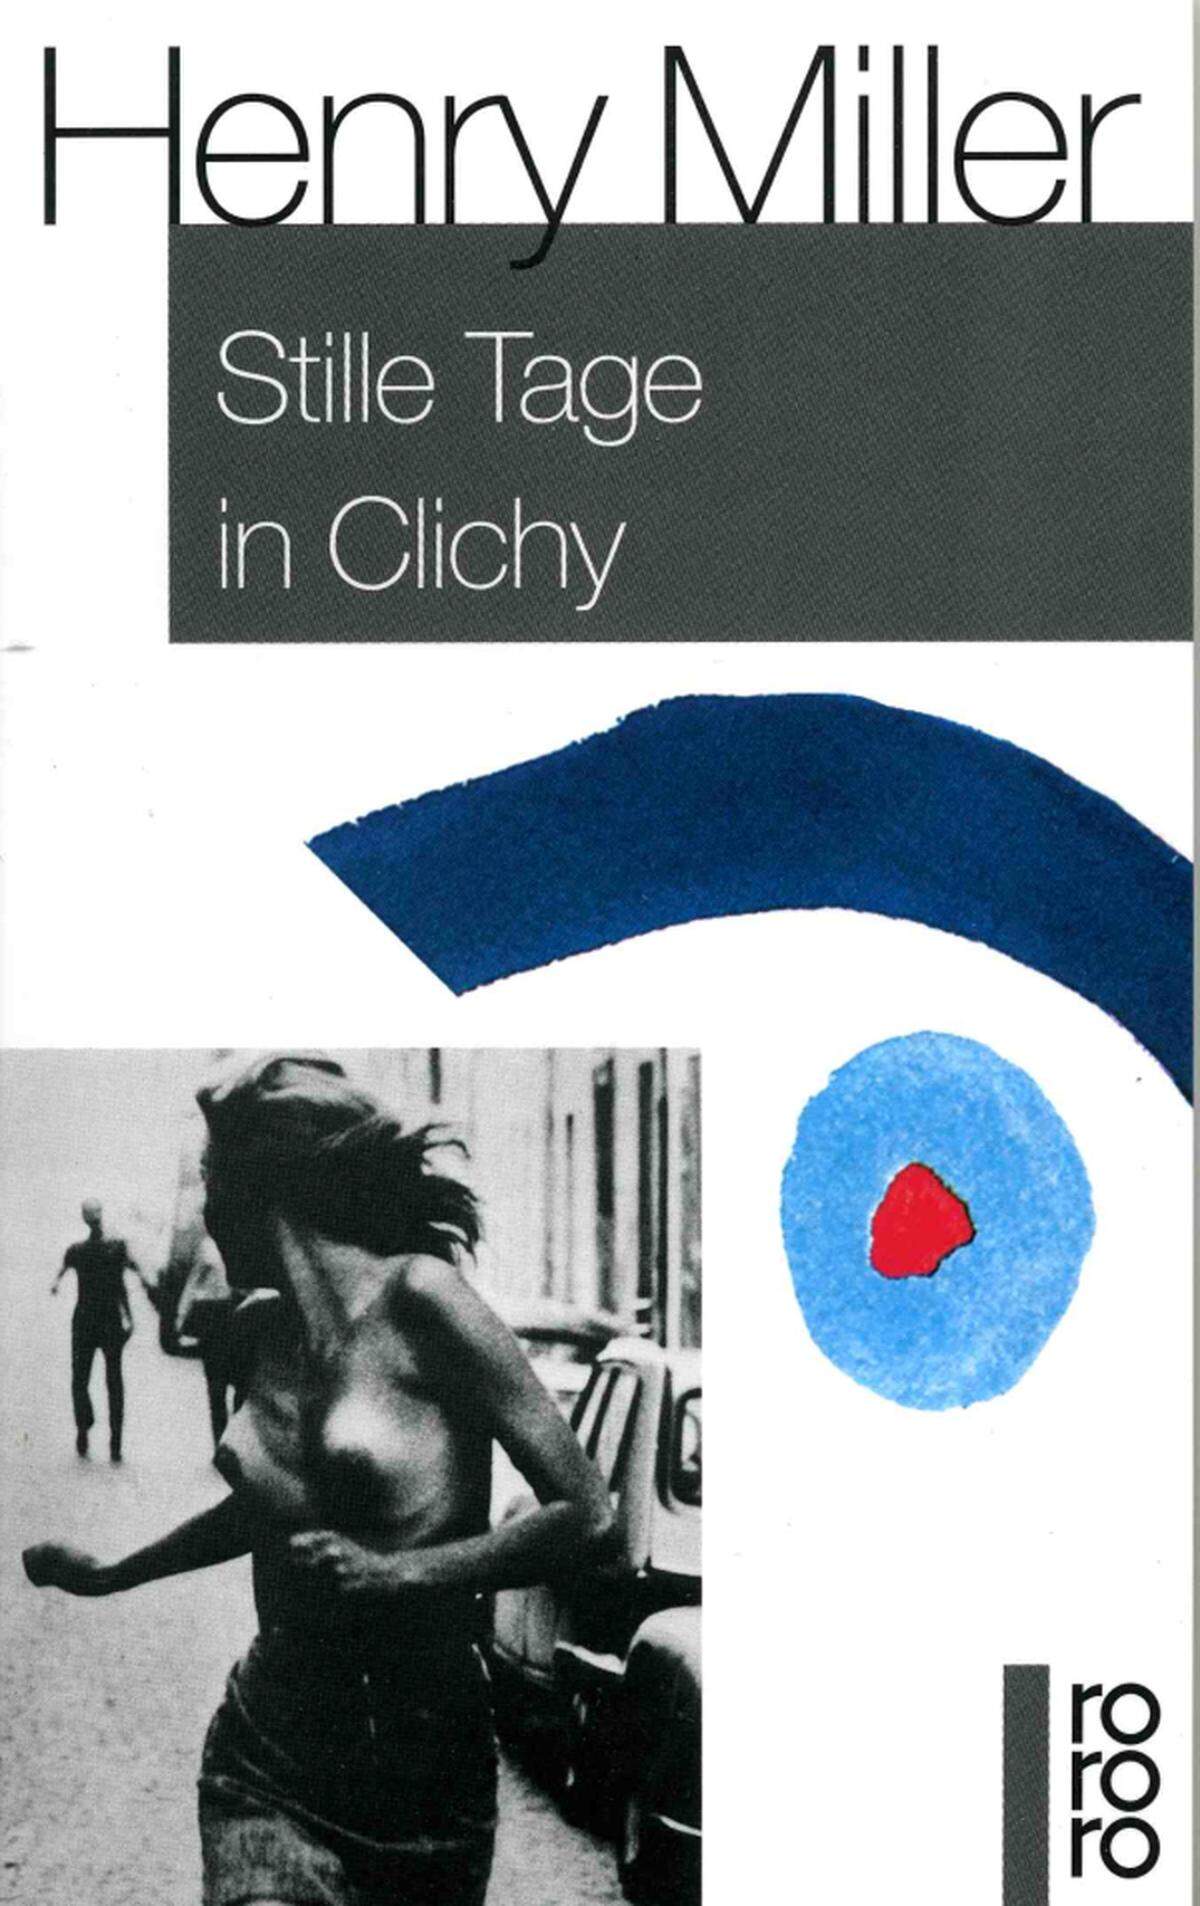 Stille Tage in Clichy spielt im Paris der Dreißigerjahre. Zwei junge Amerikaner führen ein wildes Leben inklusive Prostitution und sexuellen Skandalen. In Amerika landete das Buch prompt auf dem Index. Jahre später entdeckte man die Geschichten Henry Millers wieder.